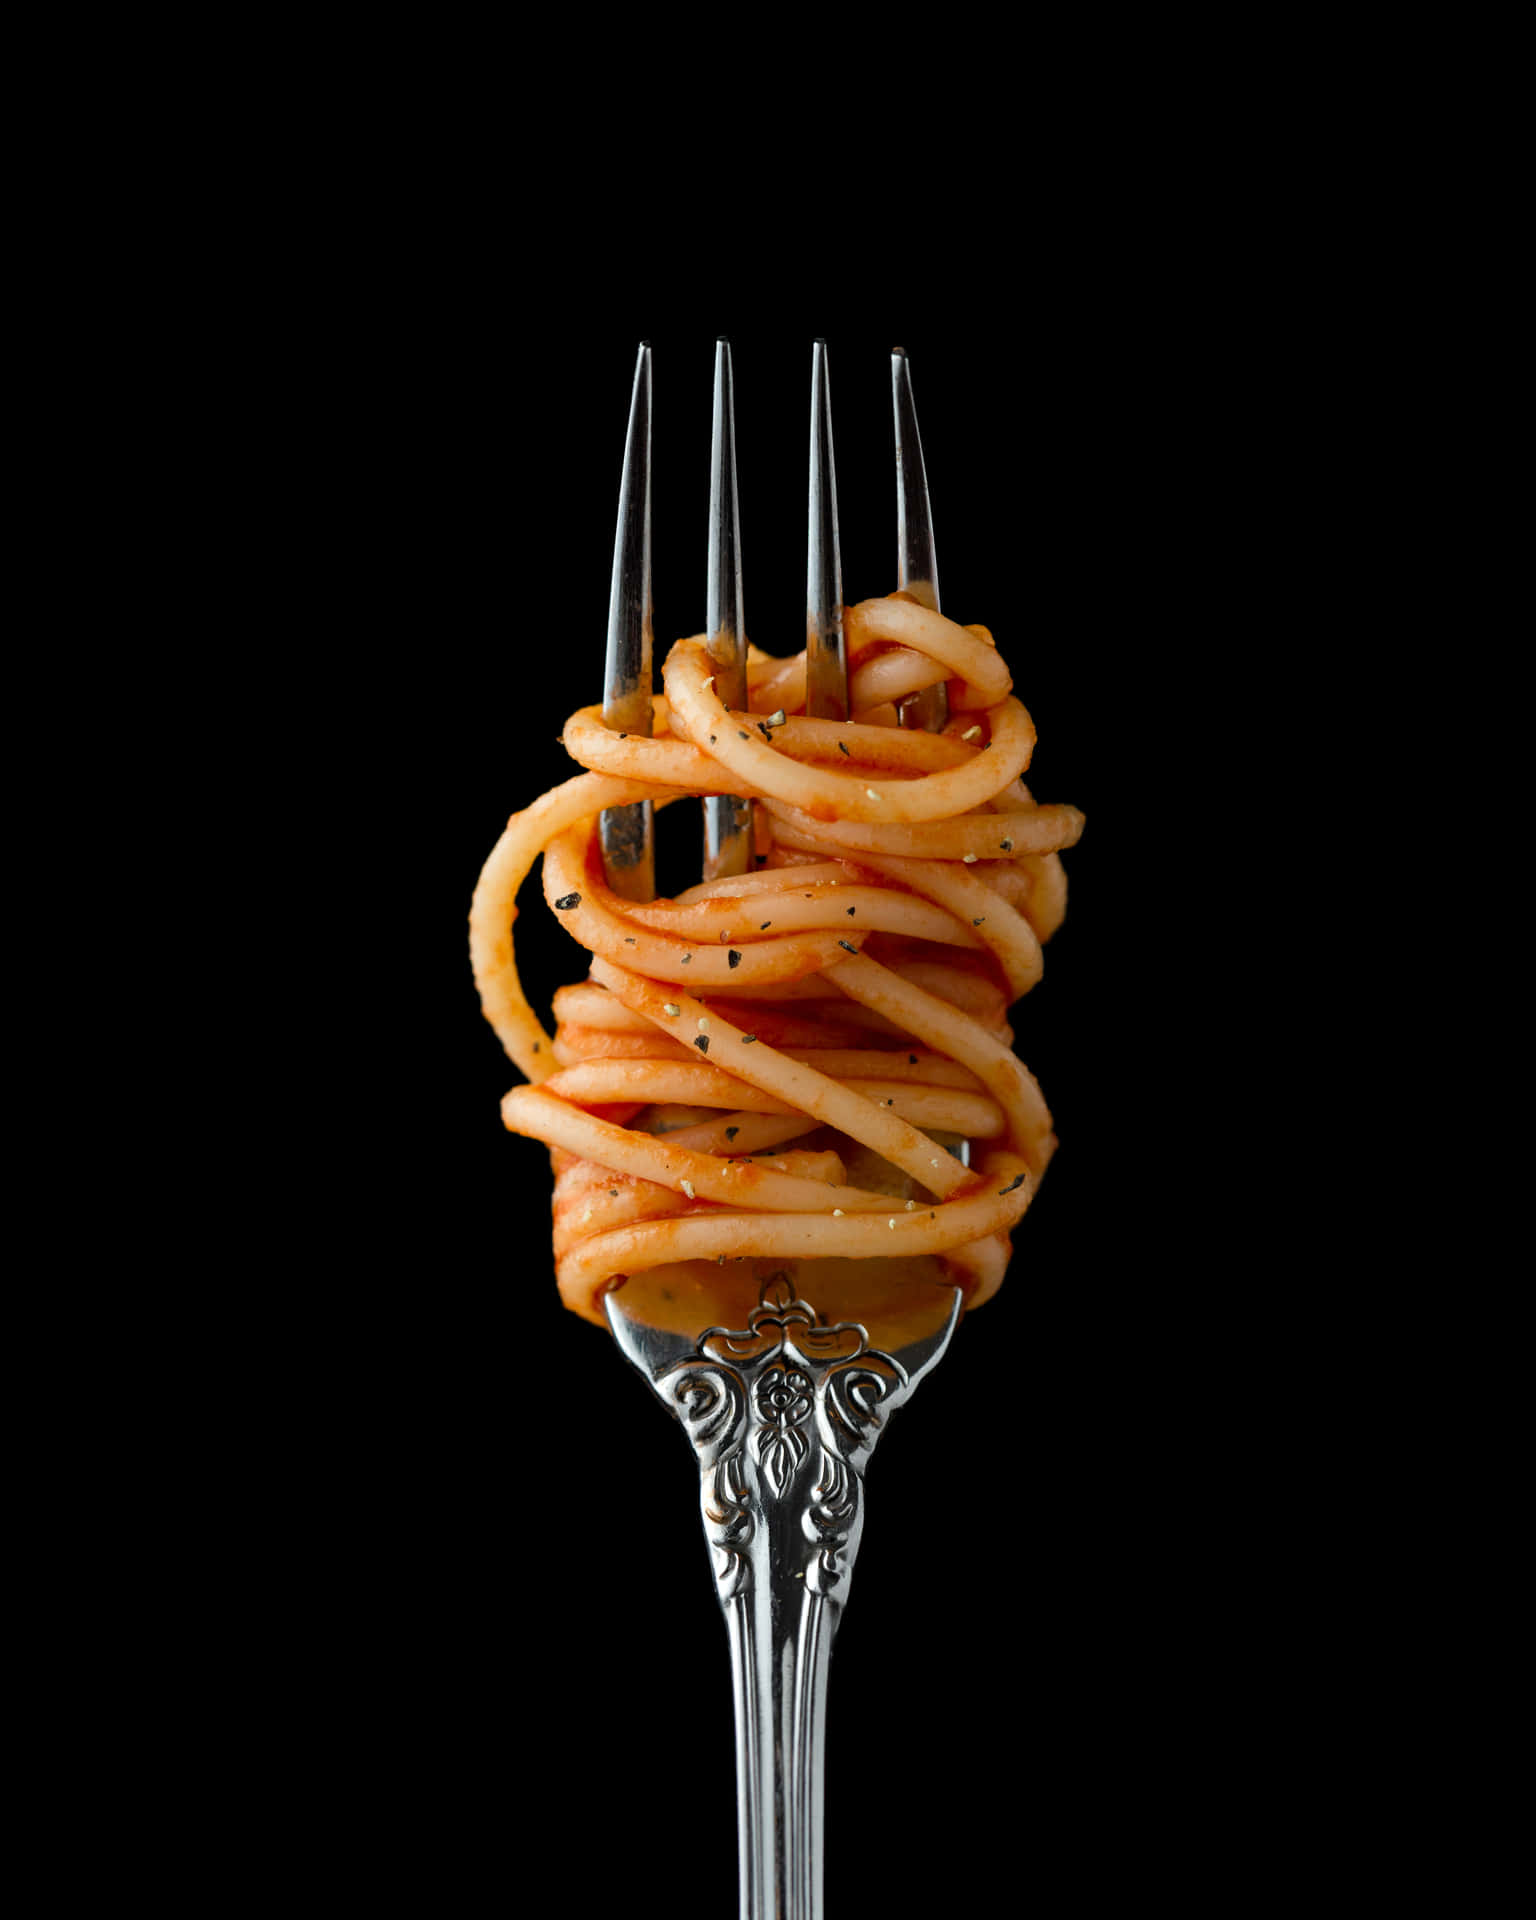 En gaffel med spaghetti på den Wallpaper